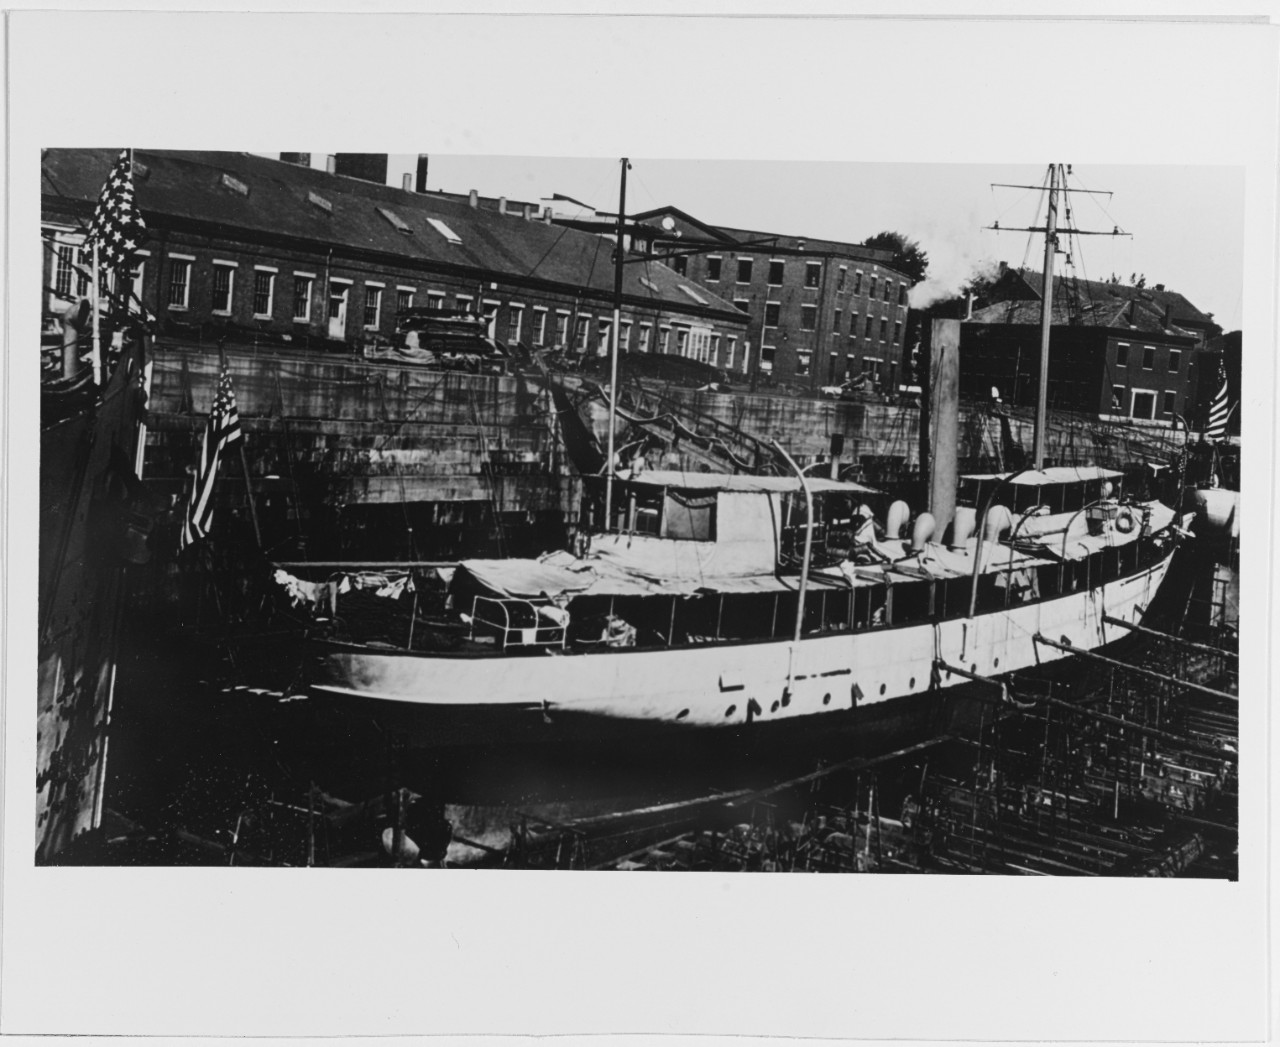 USS EAGLE (1898-1920)